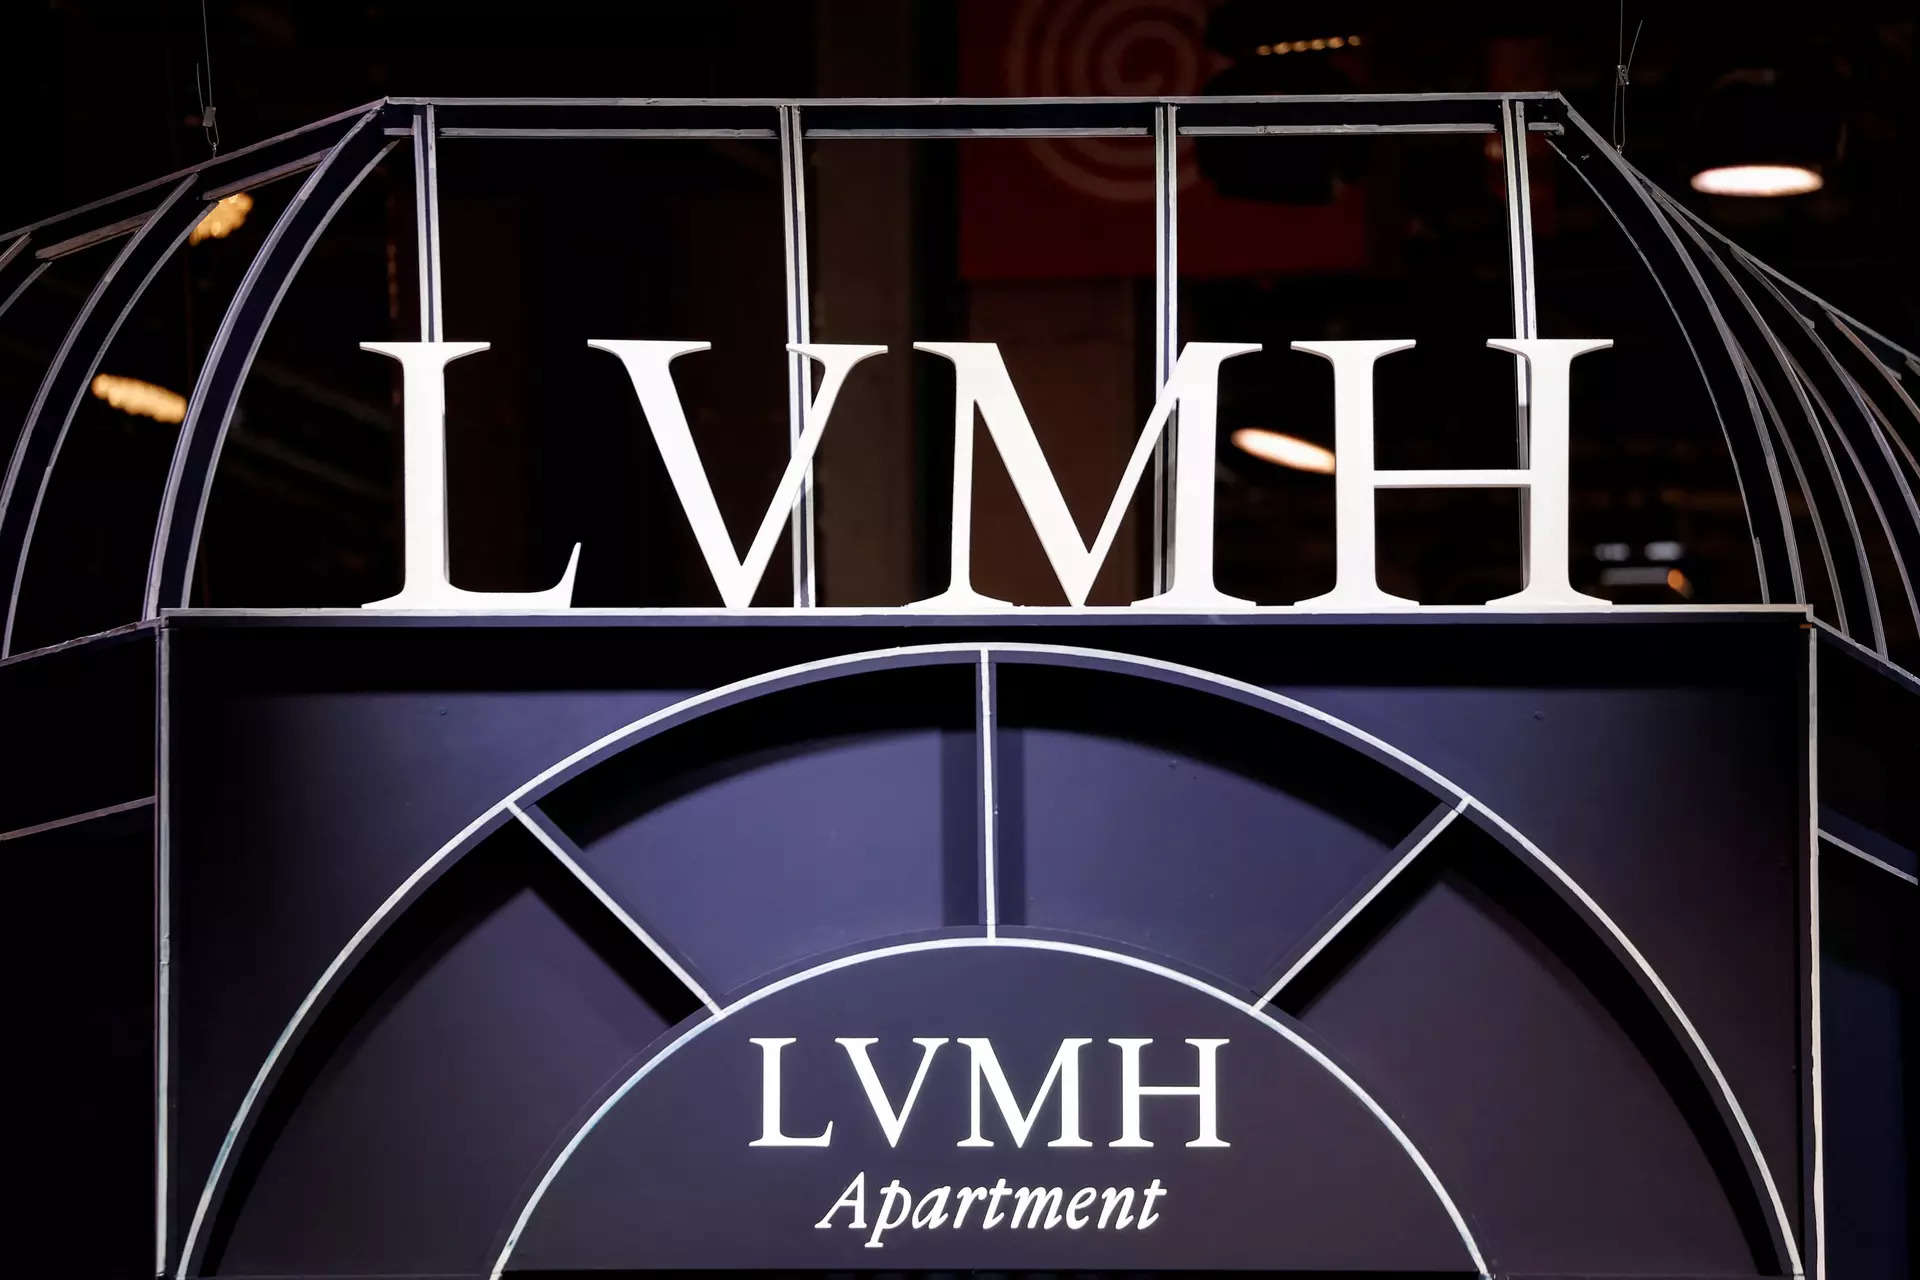 lvmh company